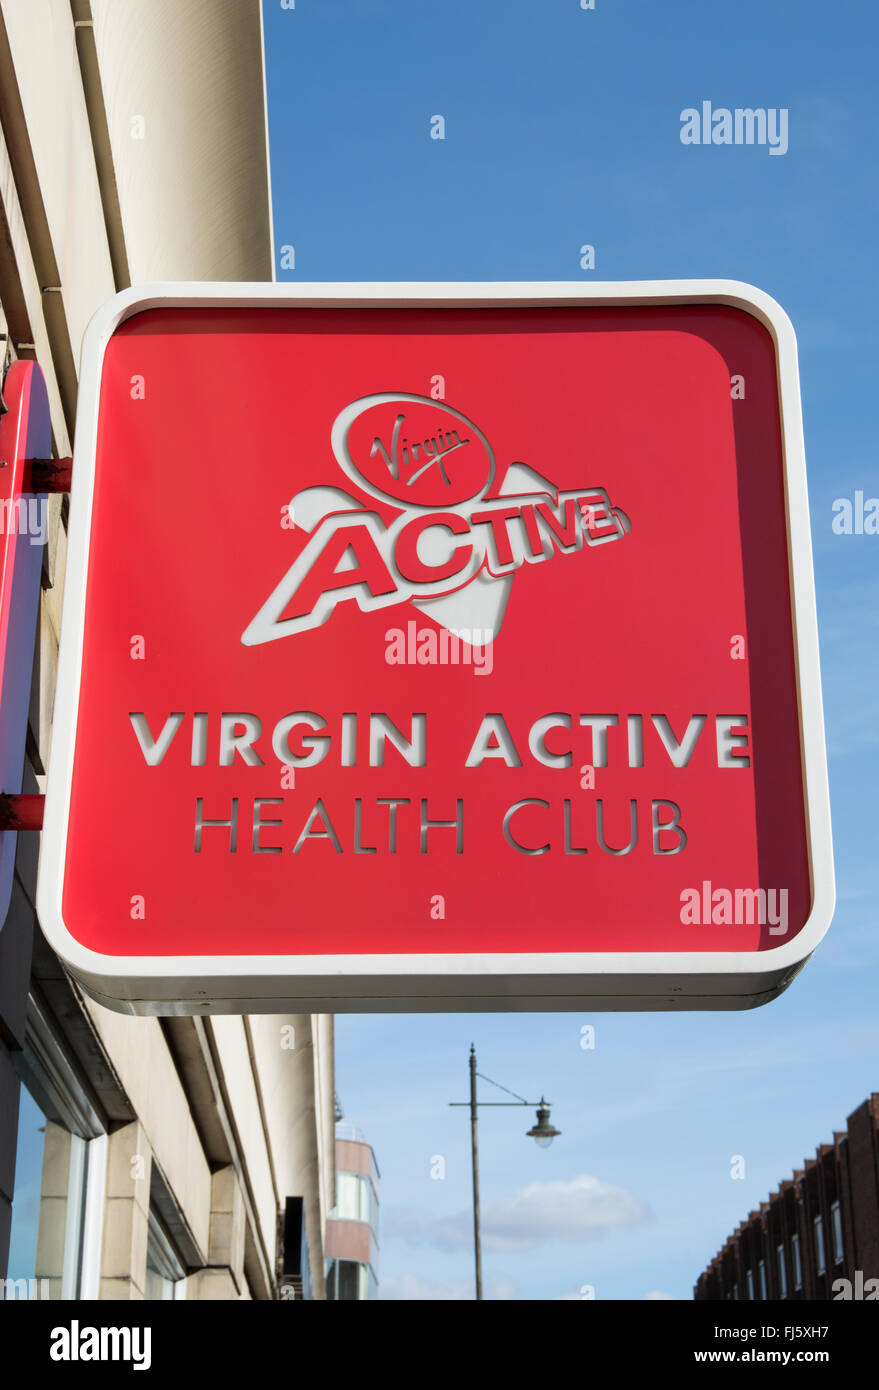 Cartello pubblicitario da appendere con il nome e il logo di Virgin Active Health Club, Wimbledon, a sud-ovest di Londra - Inghilterra Foto Stock